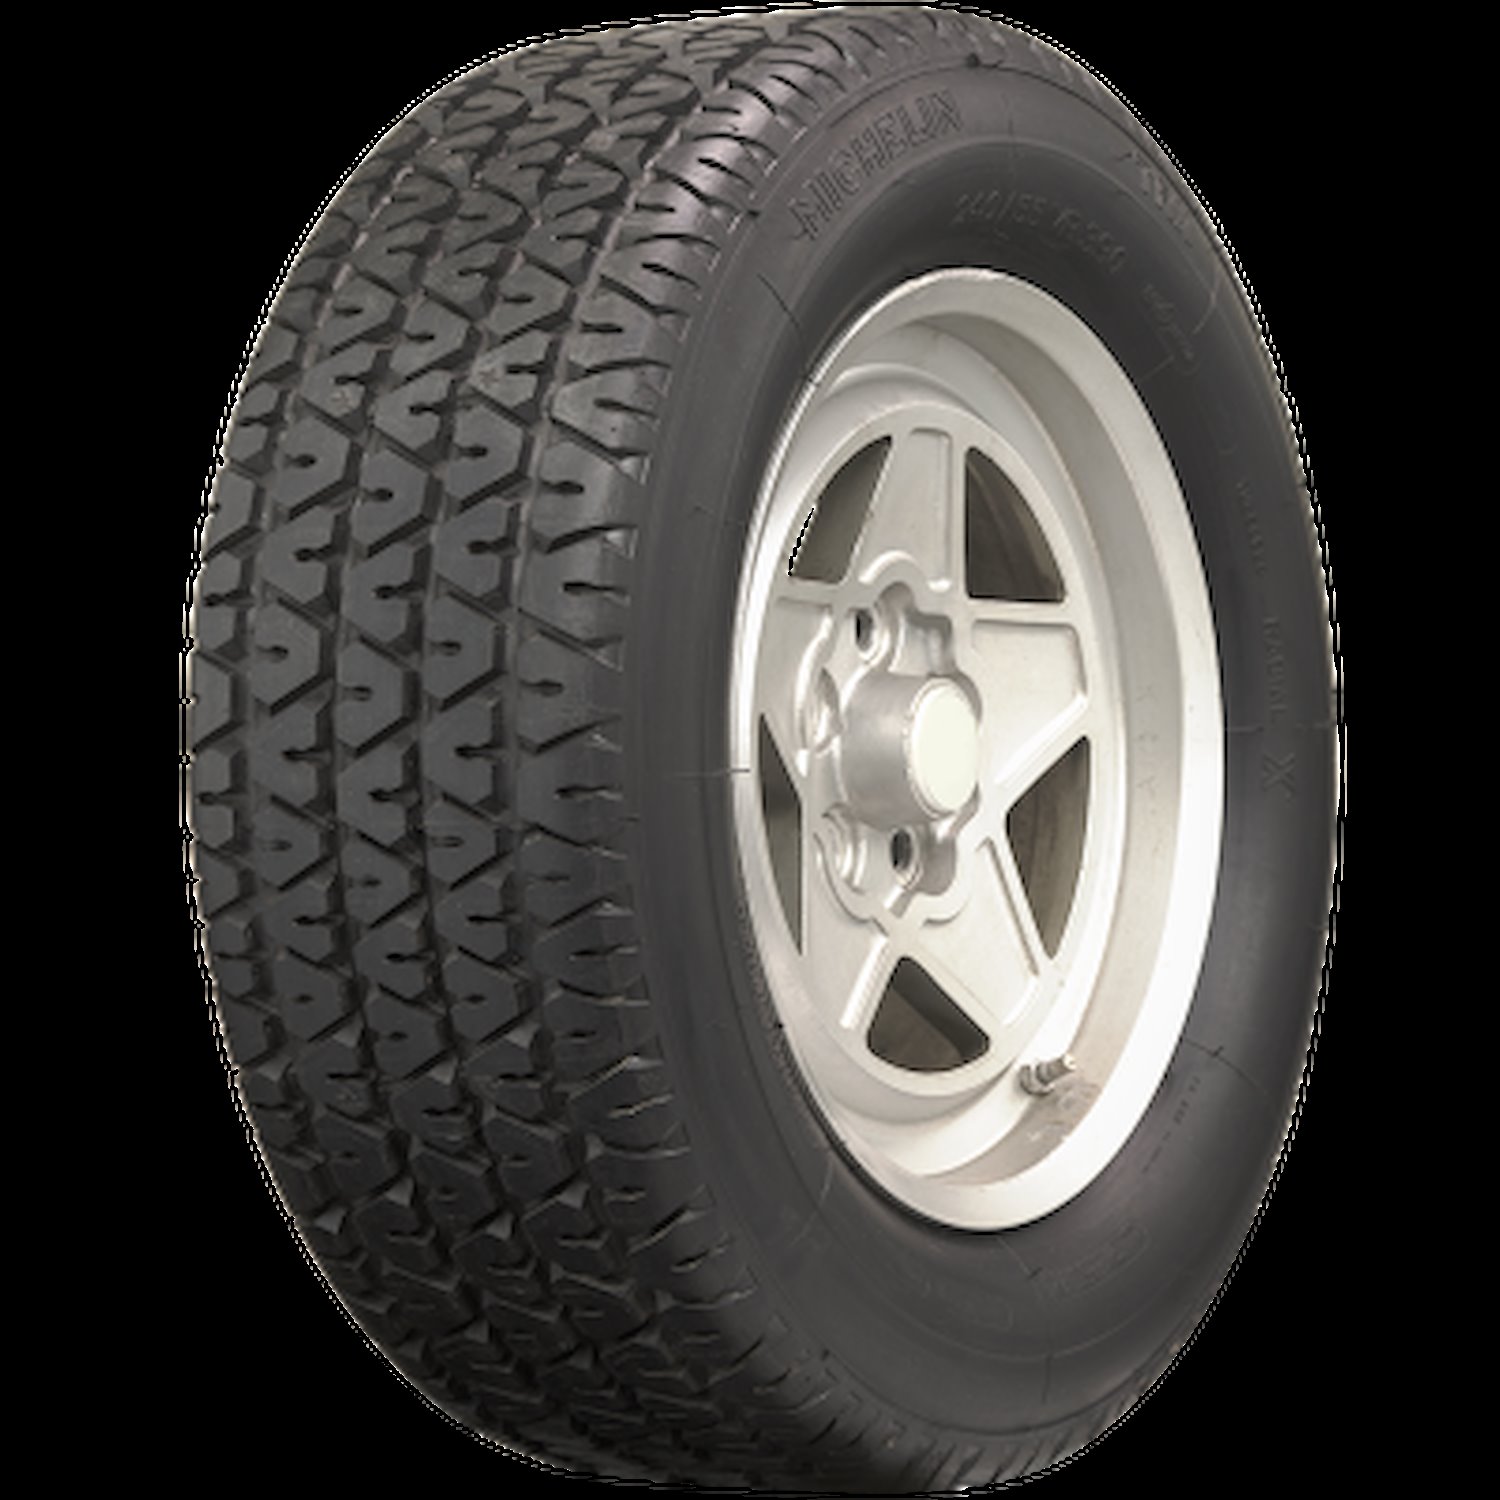 631944 Tire, Michelin TRX-B, 200/60VR390 90V